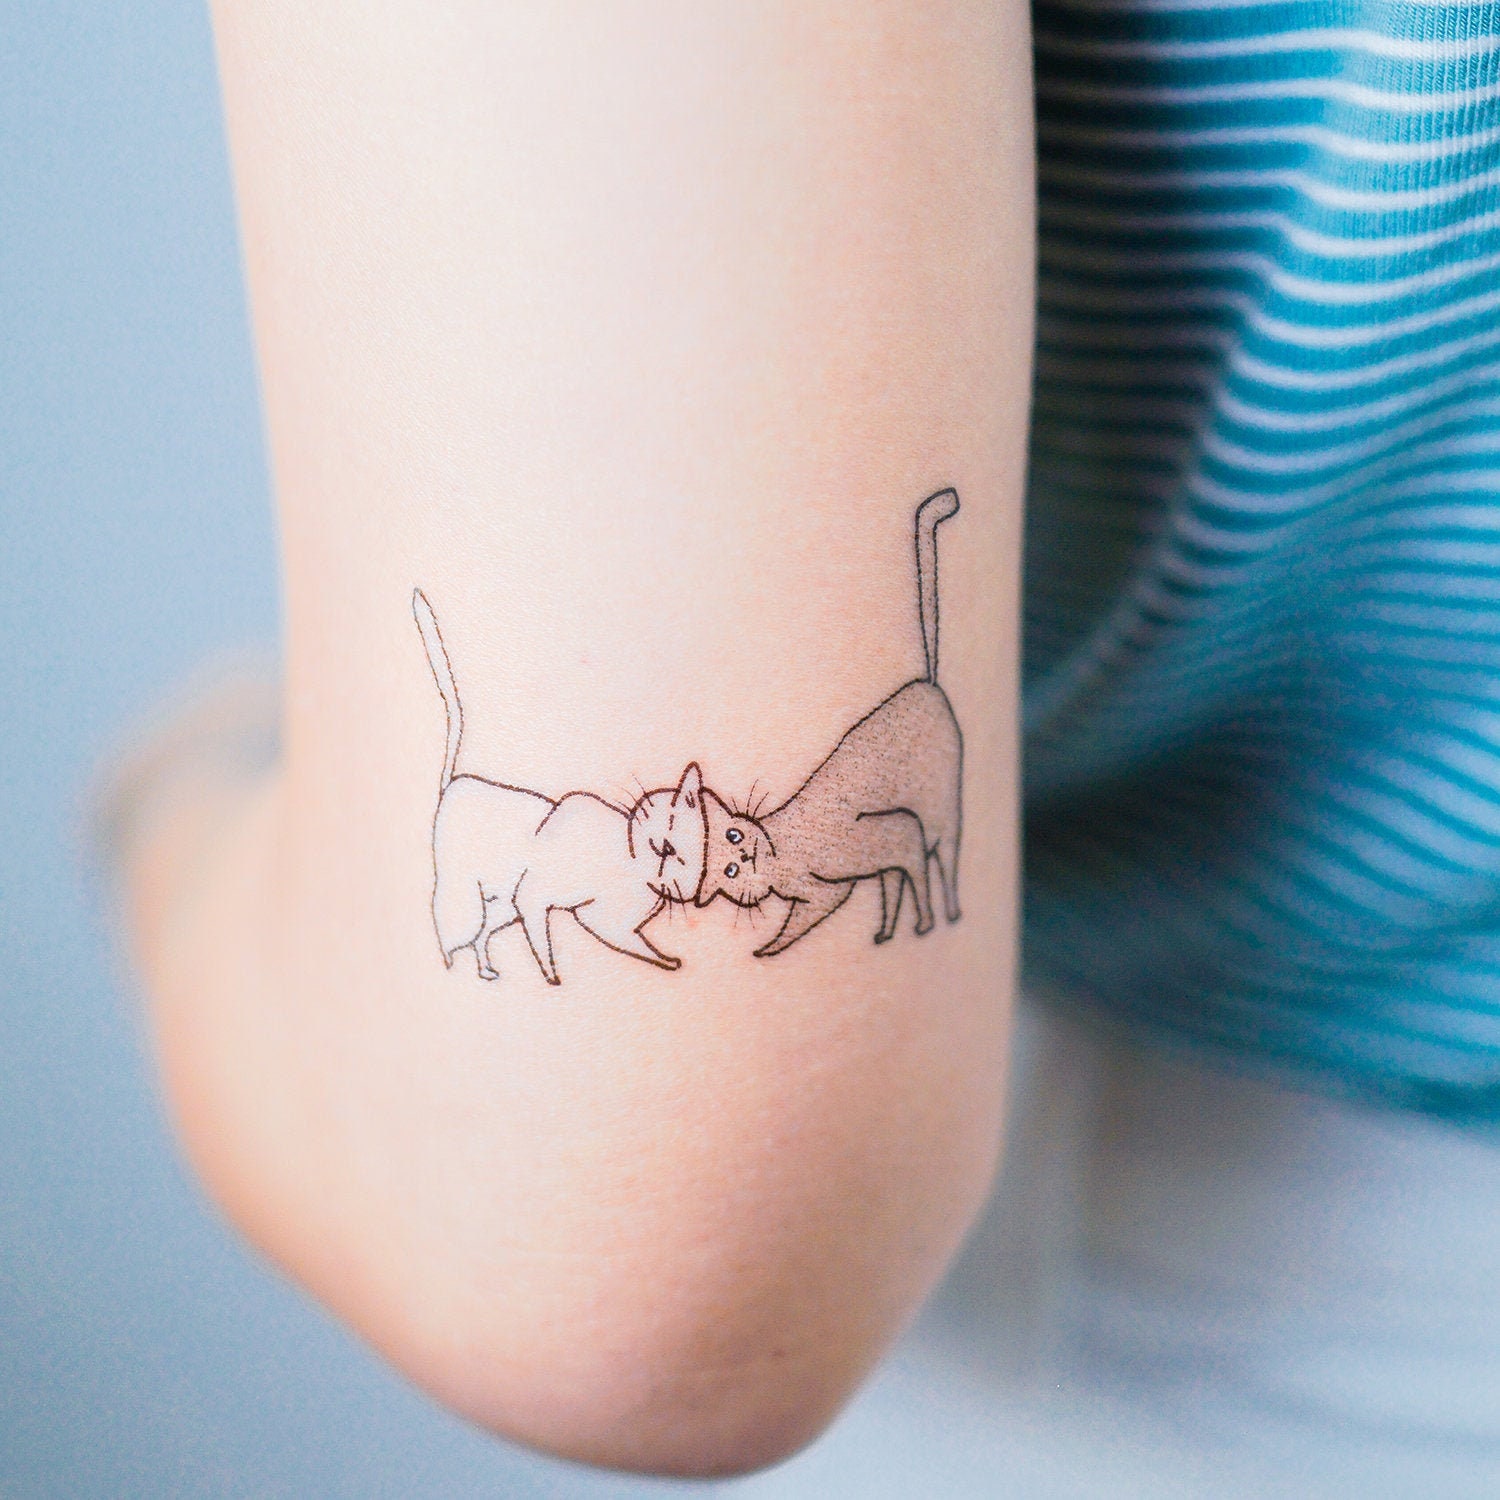 Explore the 50 Best Cat Tattoo Ideas 2019  Tattoodo